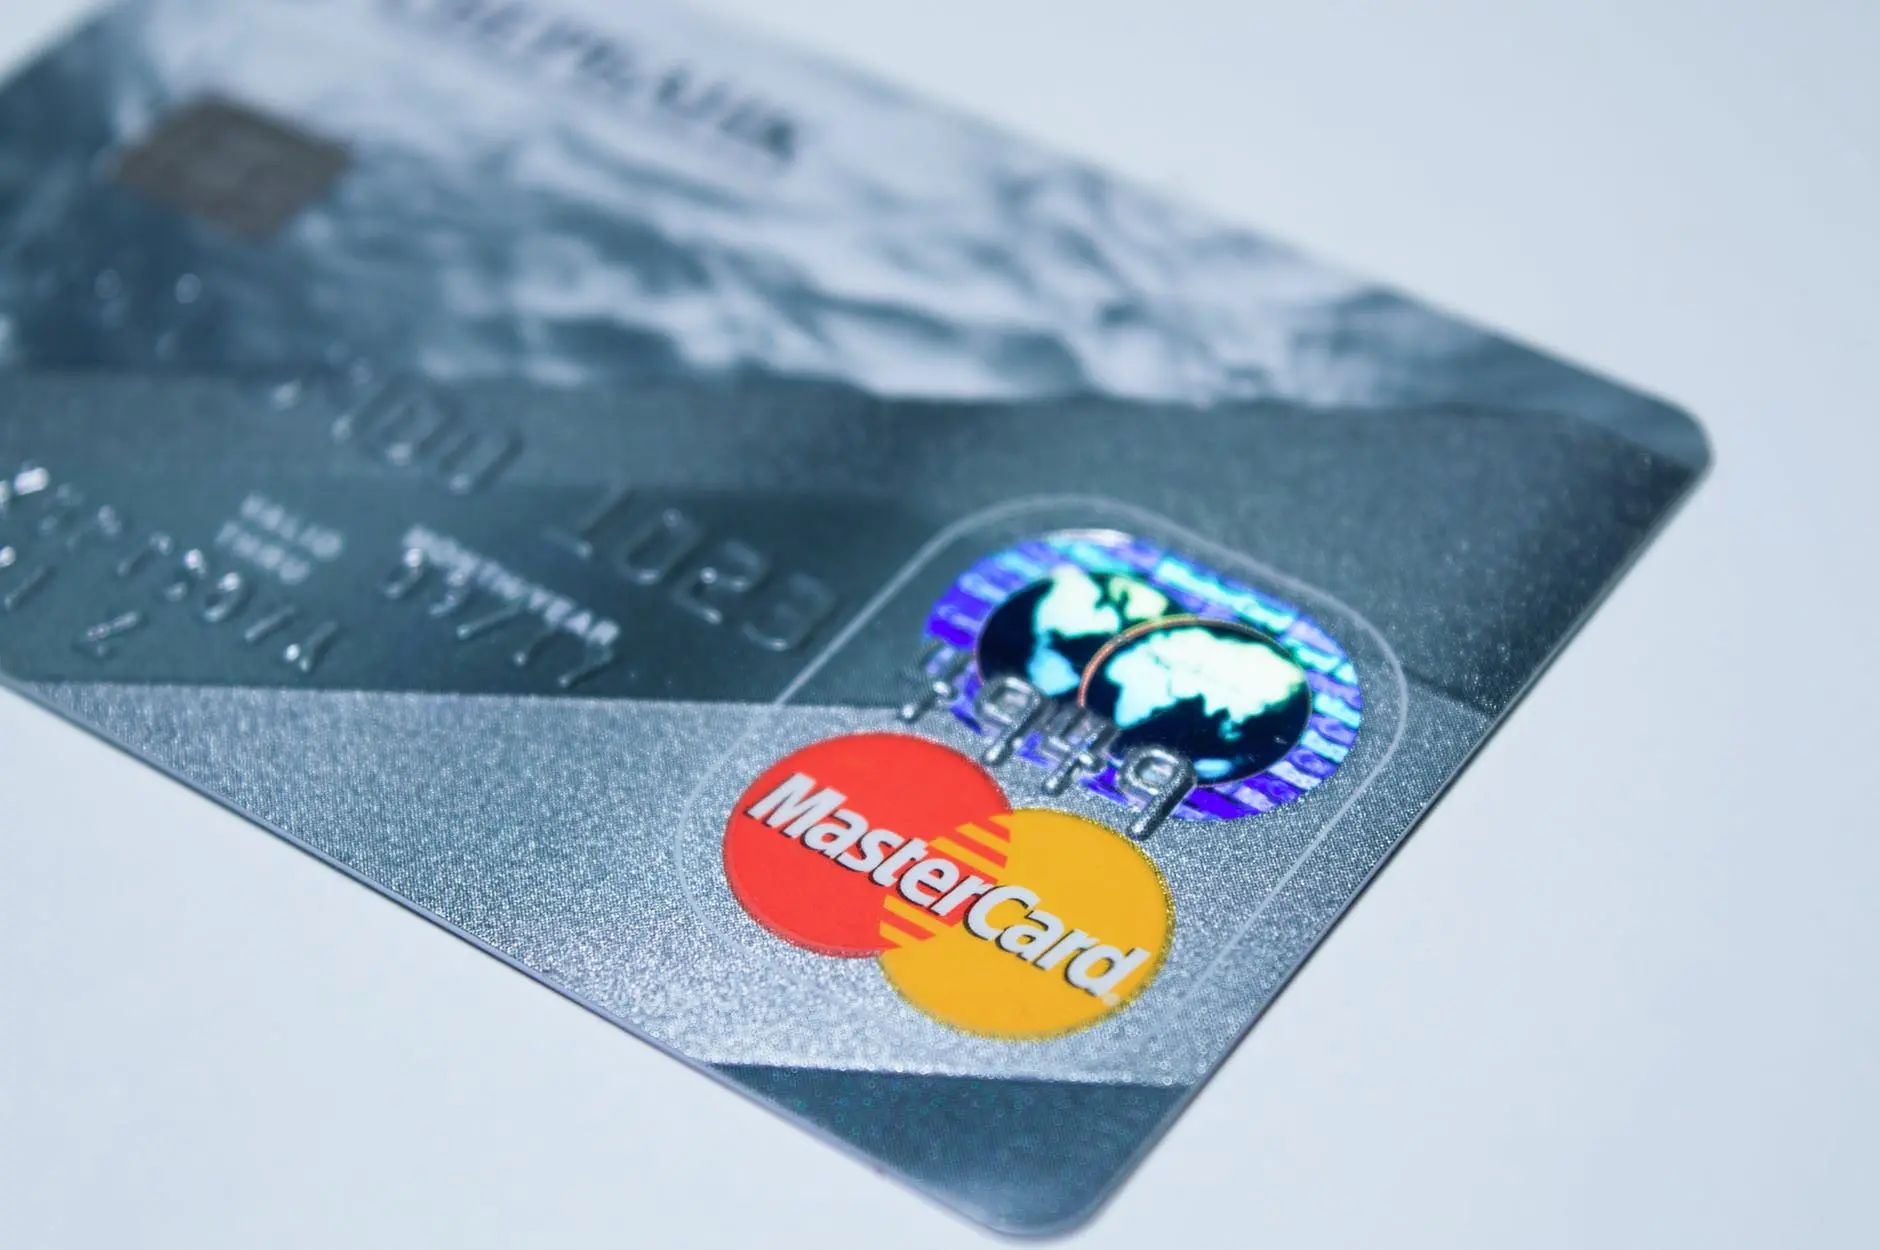 Vietin Bank điều chỉnh lãi suất thẻ tín dụng